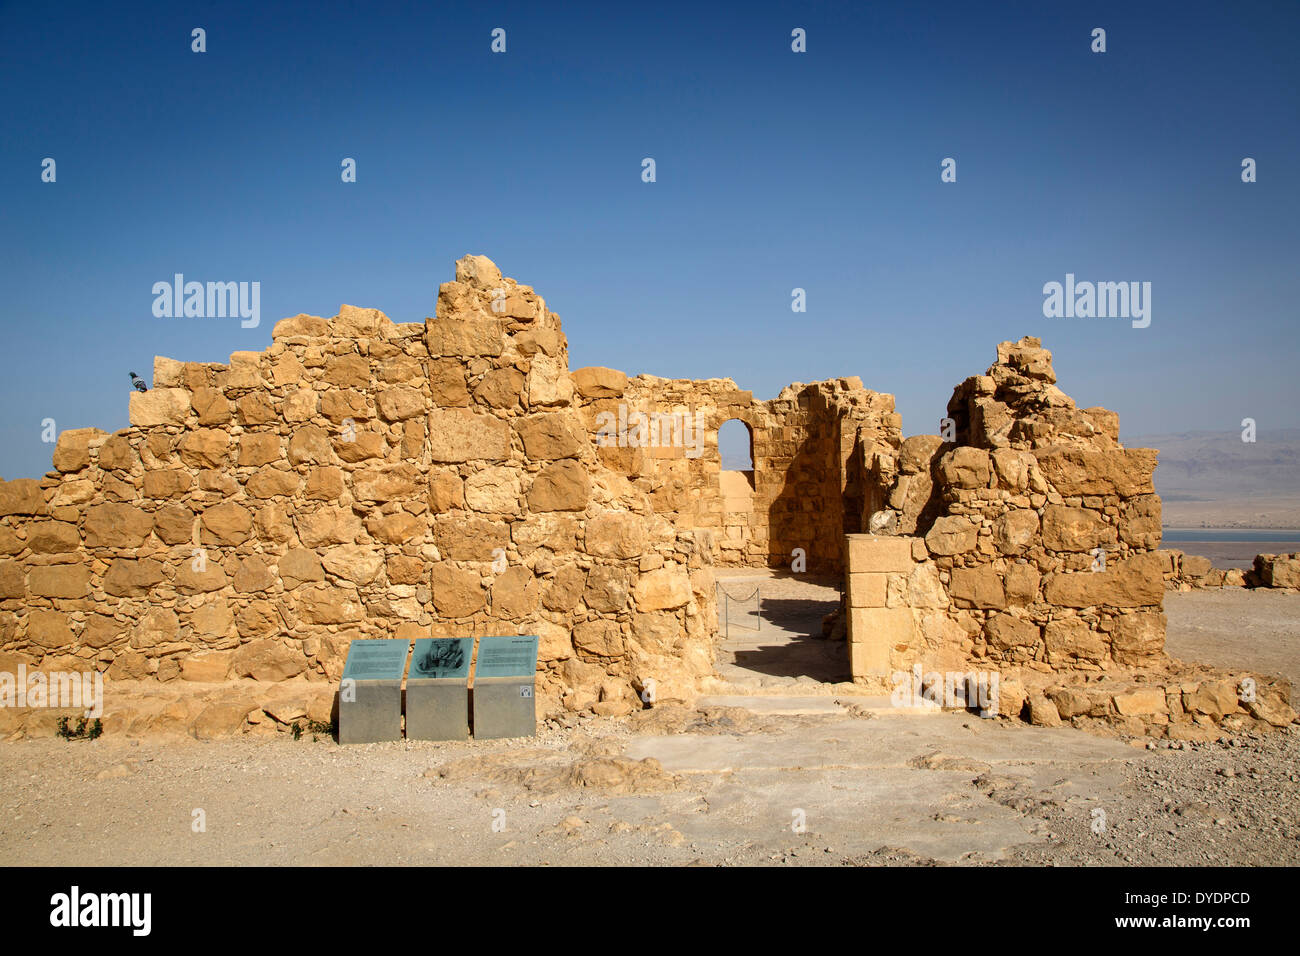 Festung Masada am Rande der Judäischen Wüste, Israel. Stockfoto